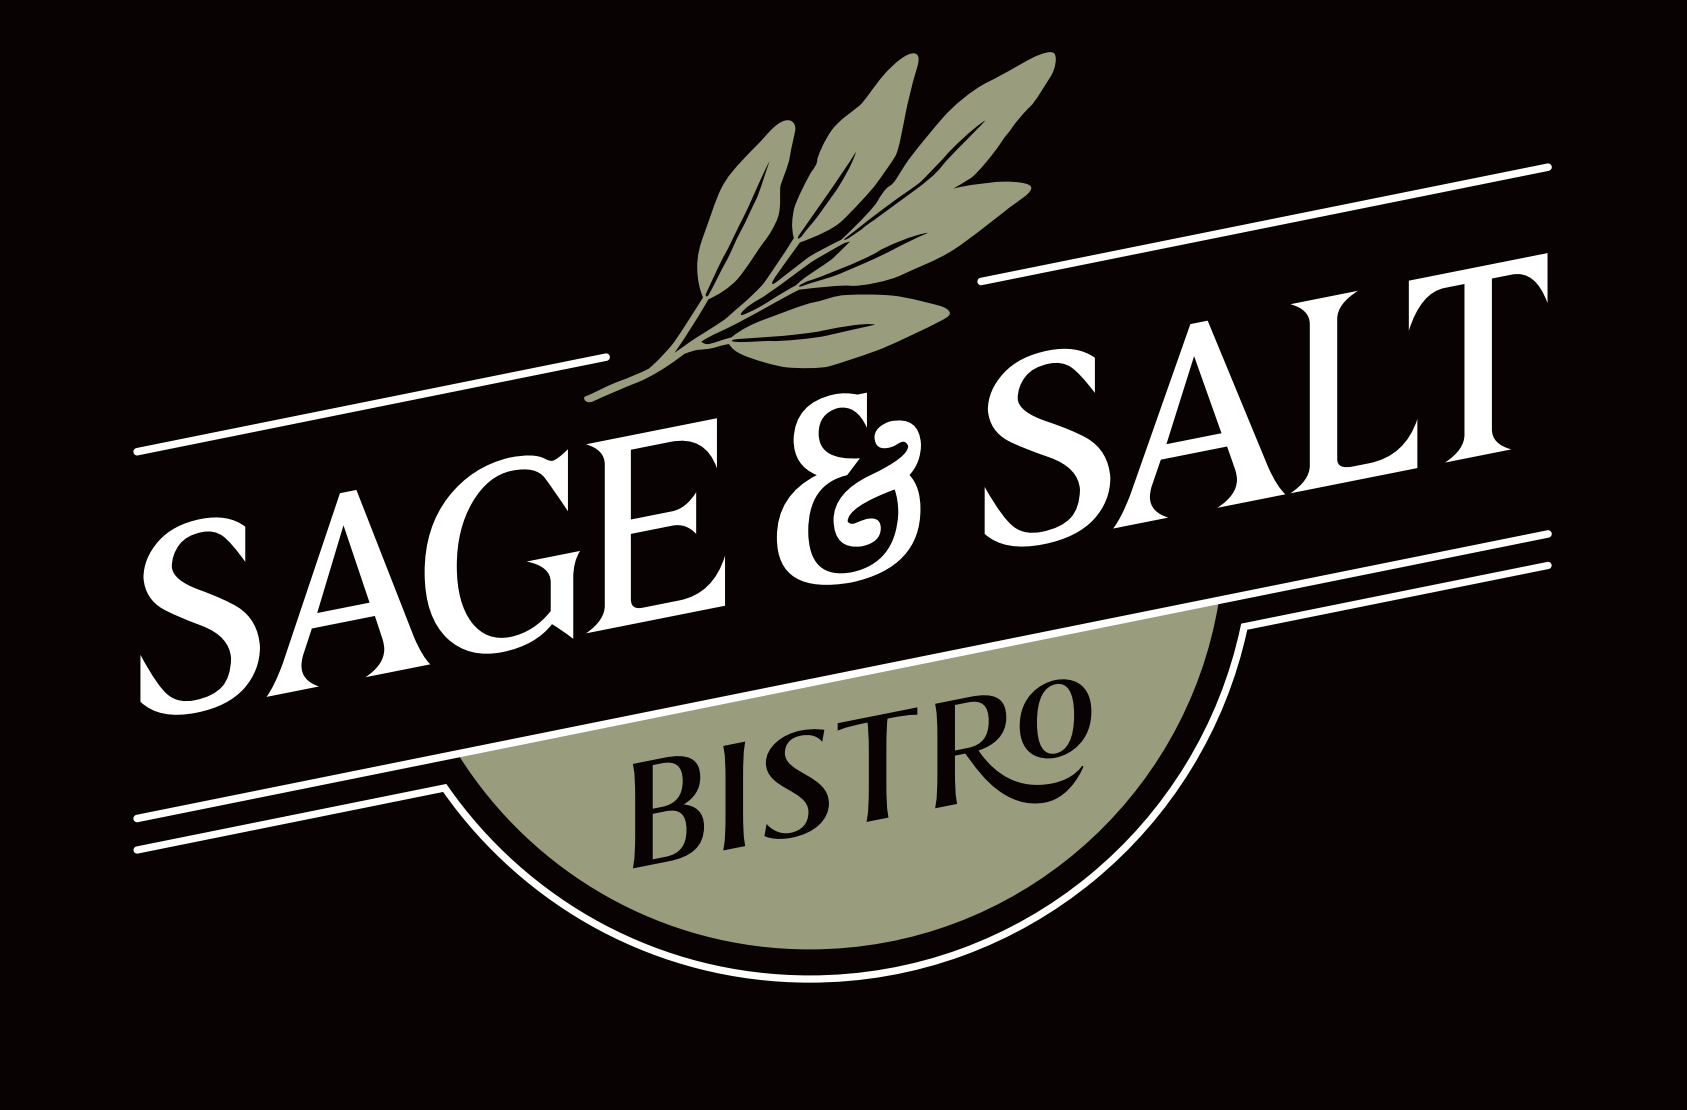 Sage & Salt Bistro logo top